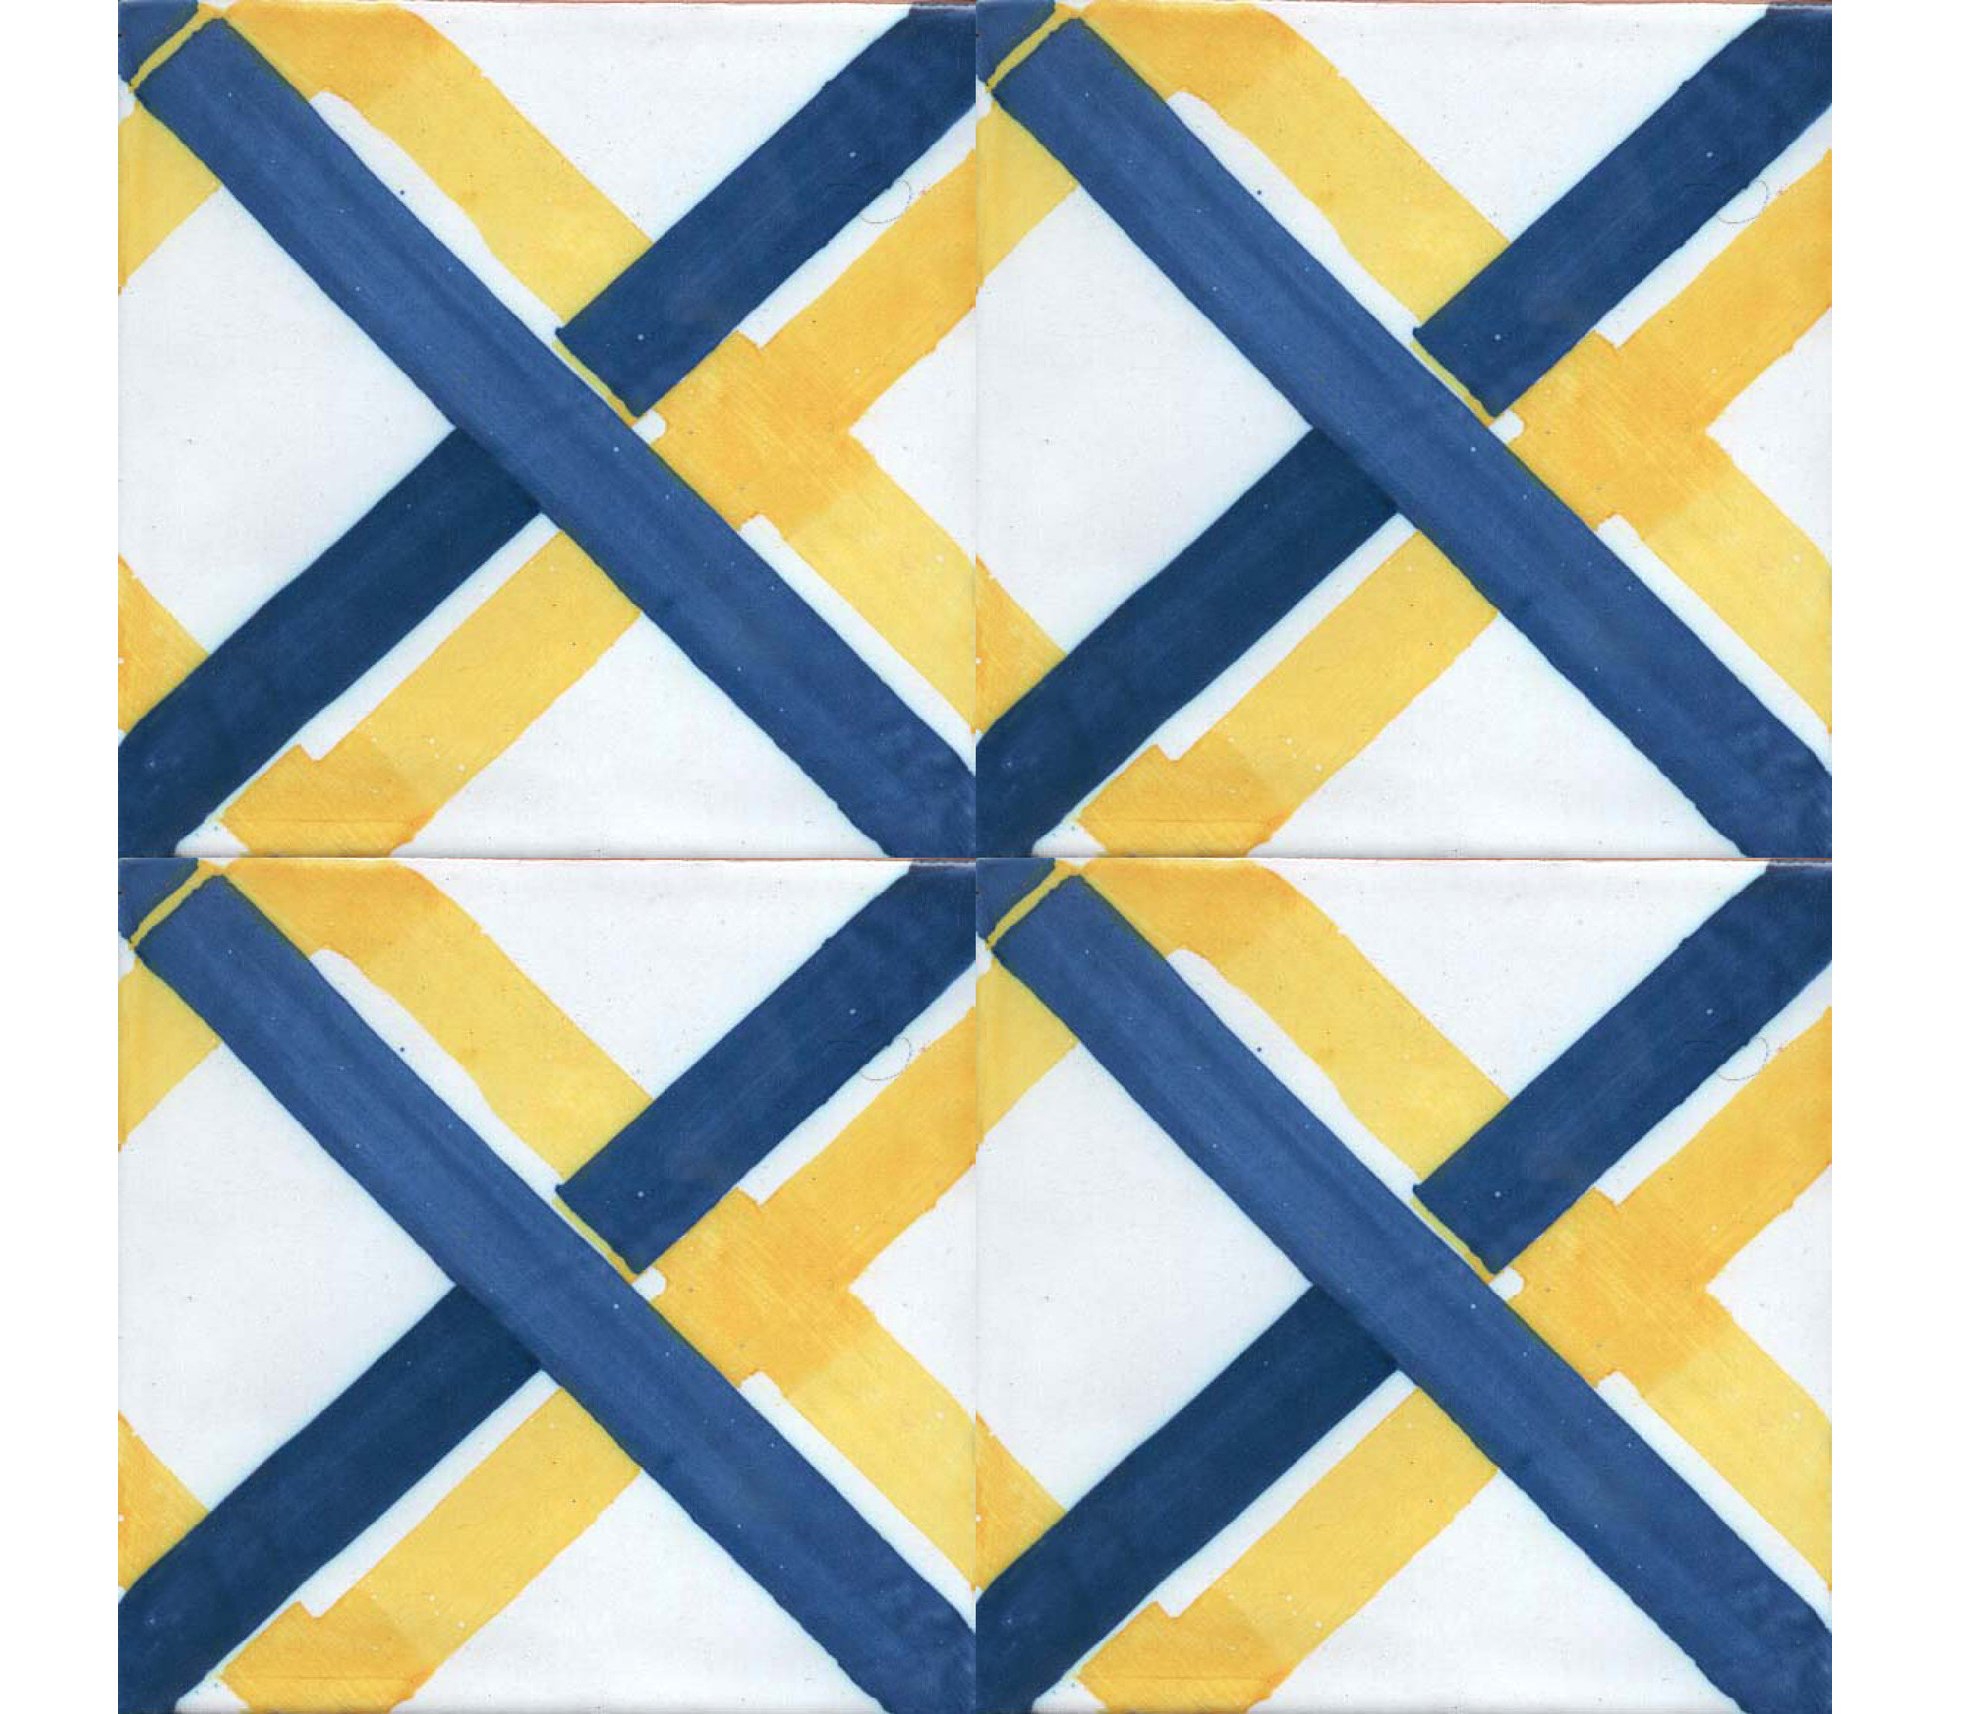 Balineum S series tiles